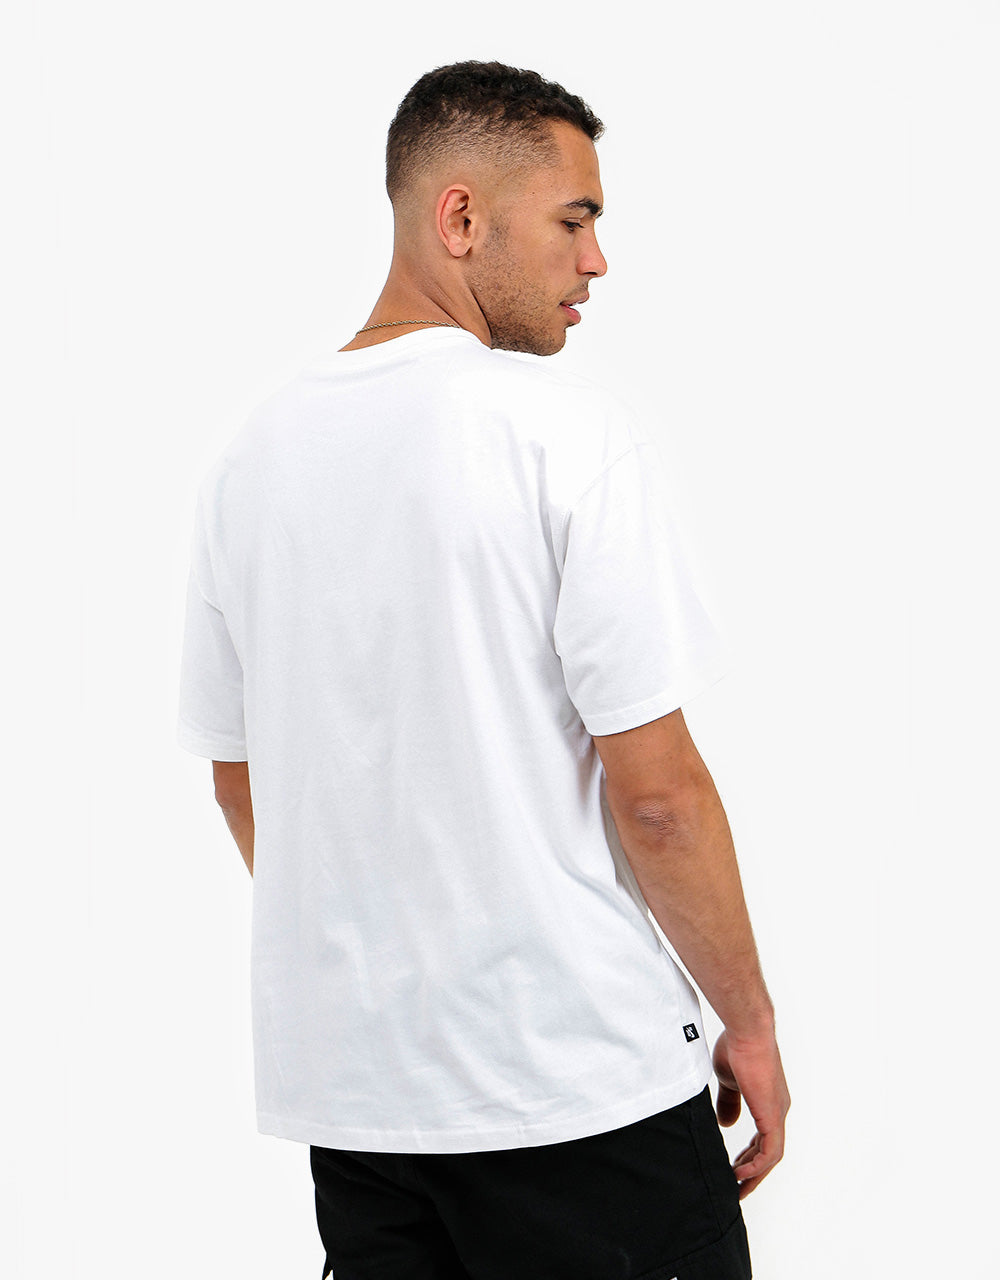 Nike SB Daan T-Shirt - White